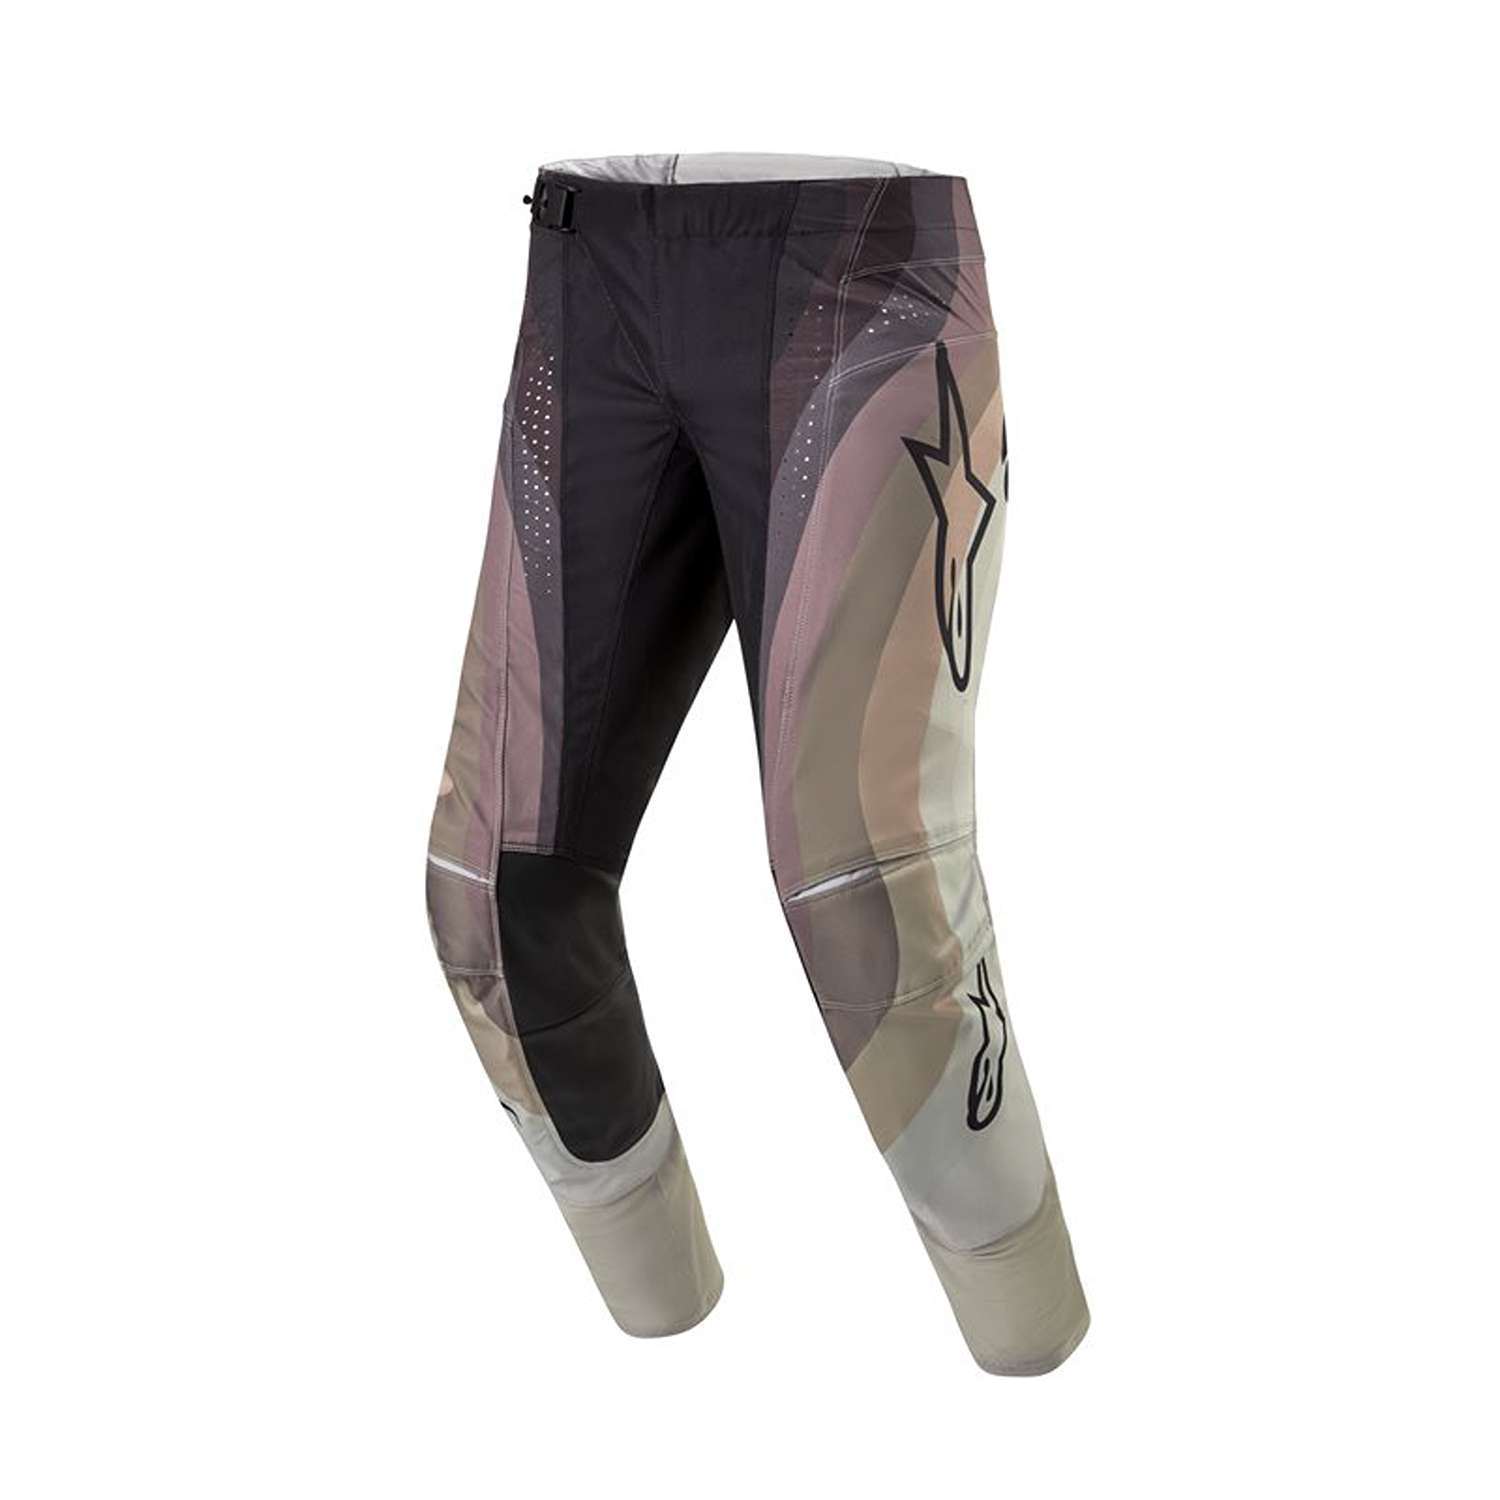 Image of Alpinestars Techstar Pneuma Pants Dark Sand Iron Dust Gray Taille 40